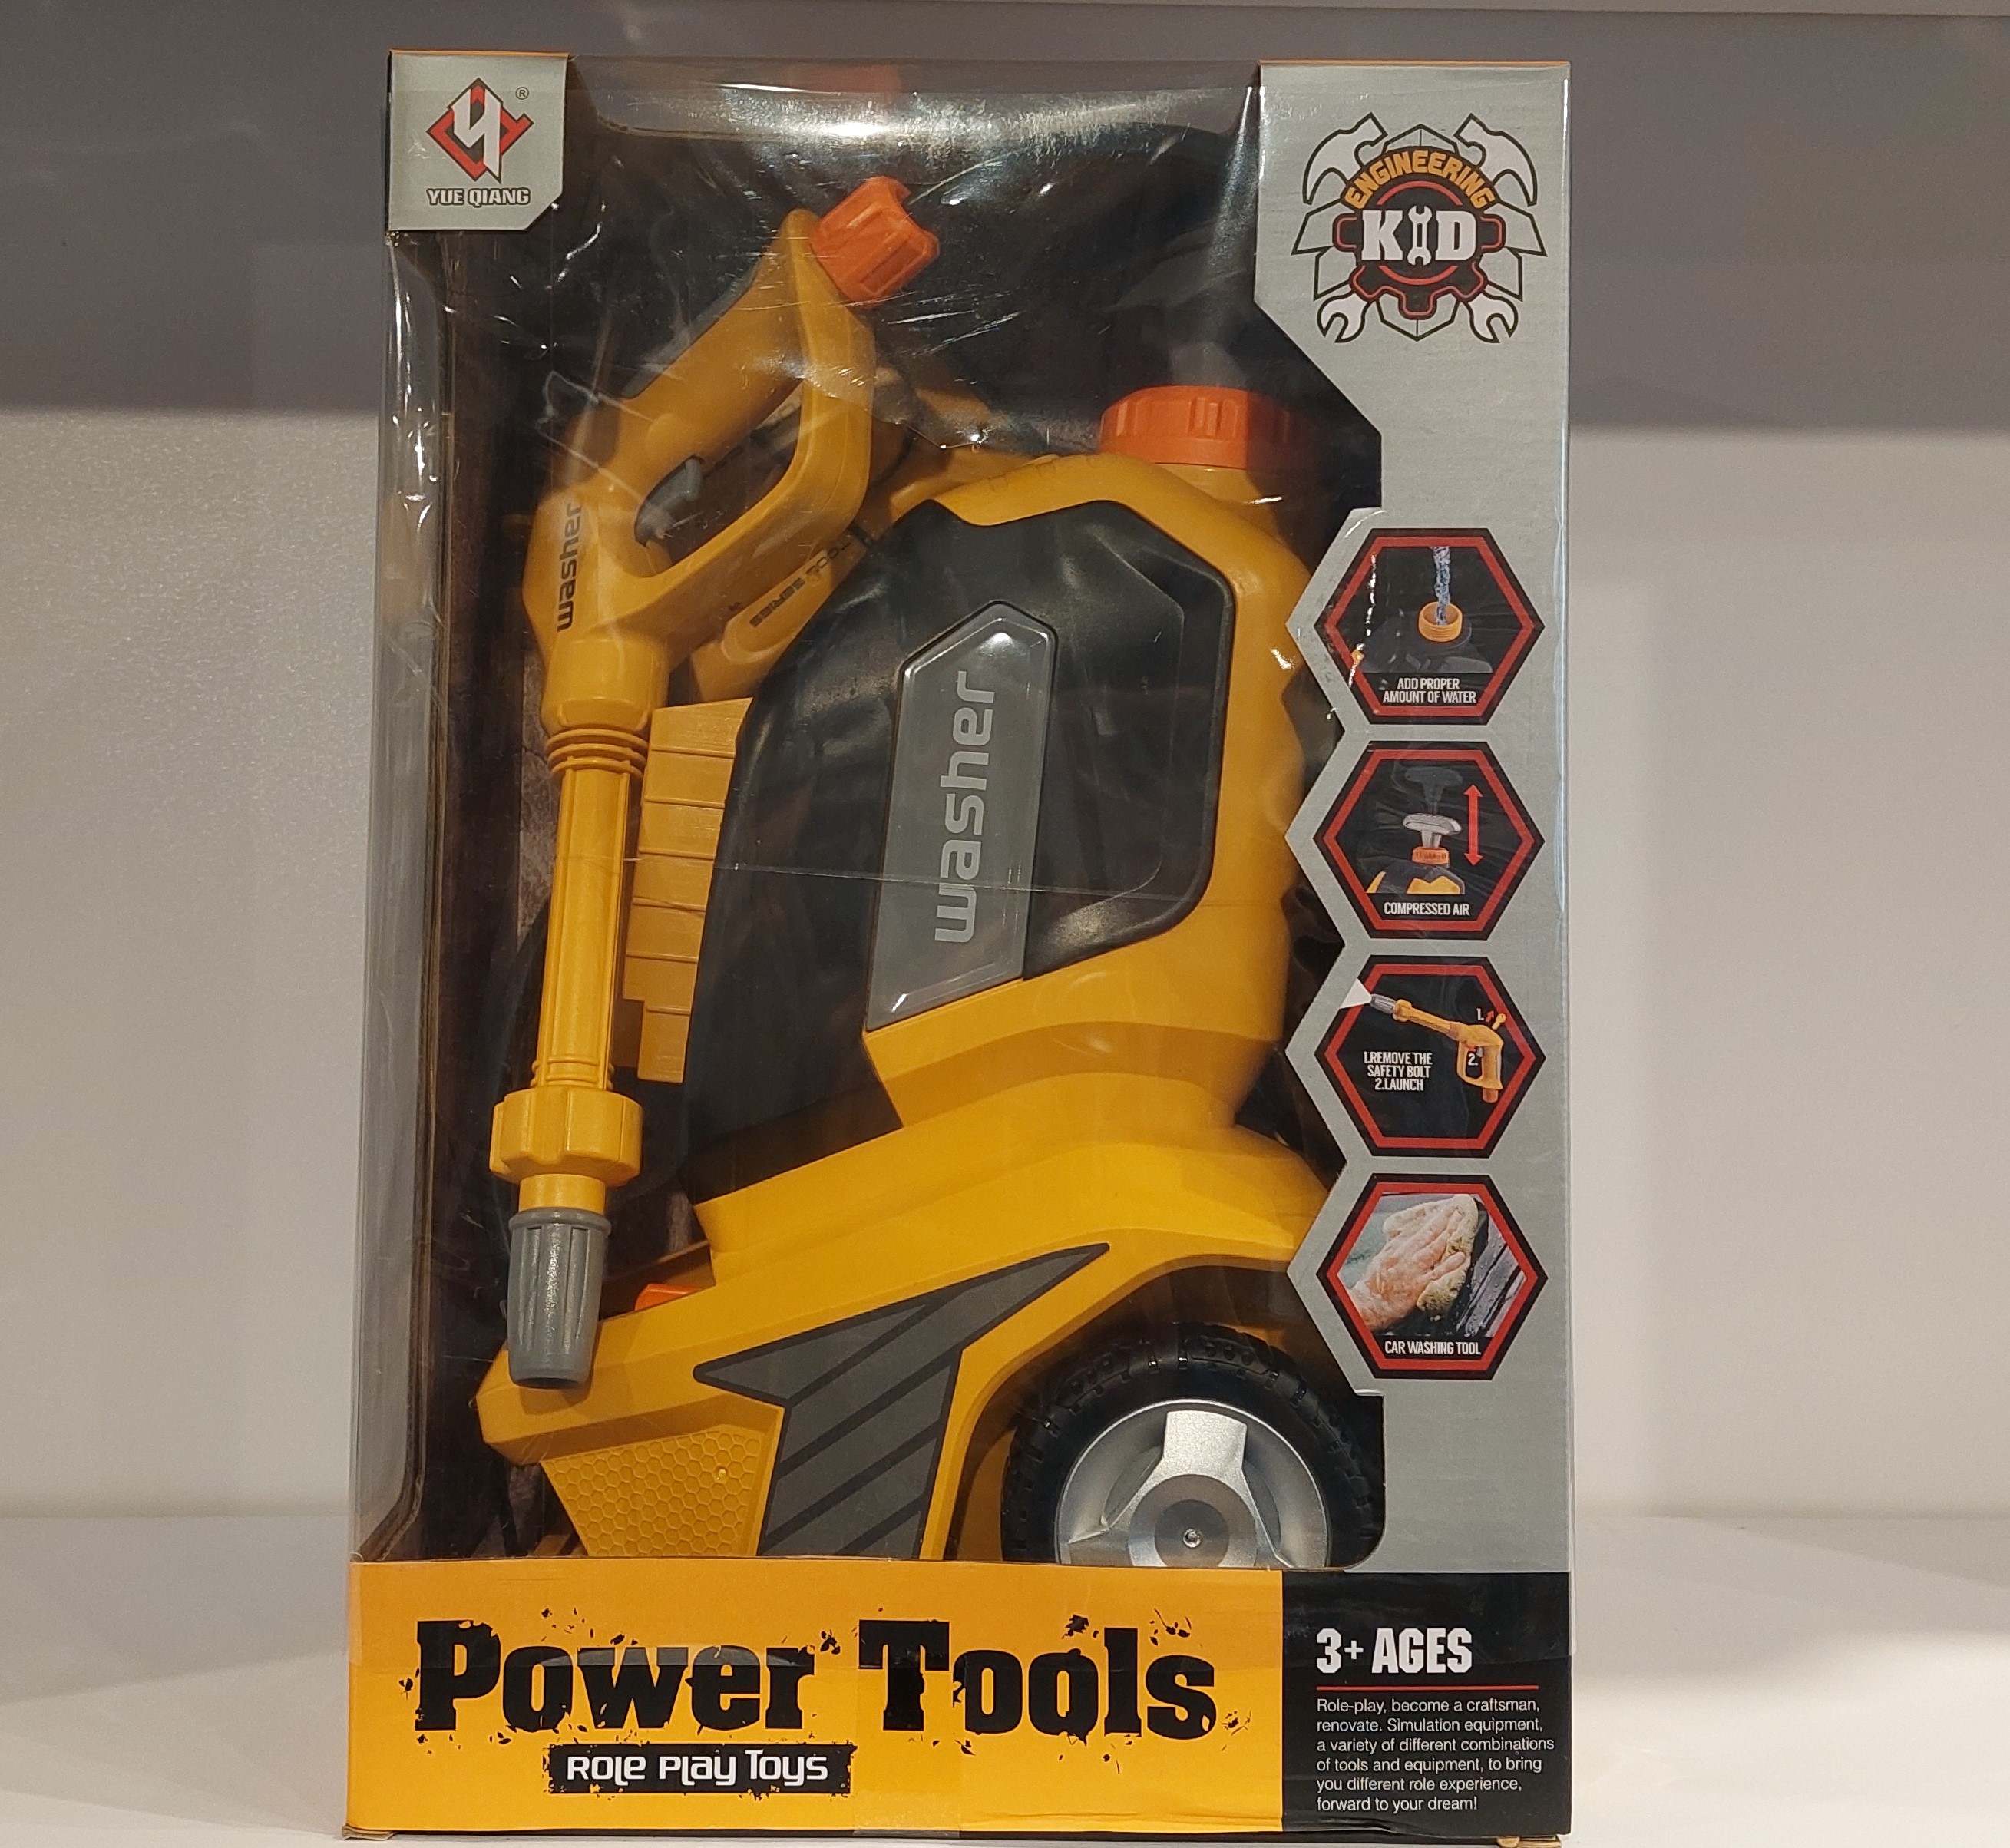 کارواش-power-tools-کد-t017